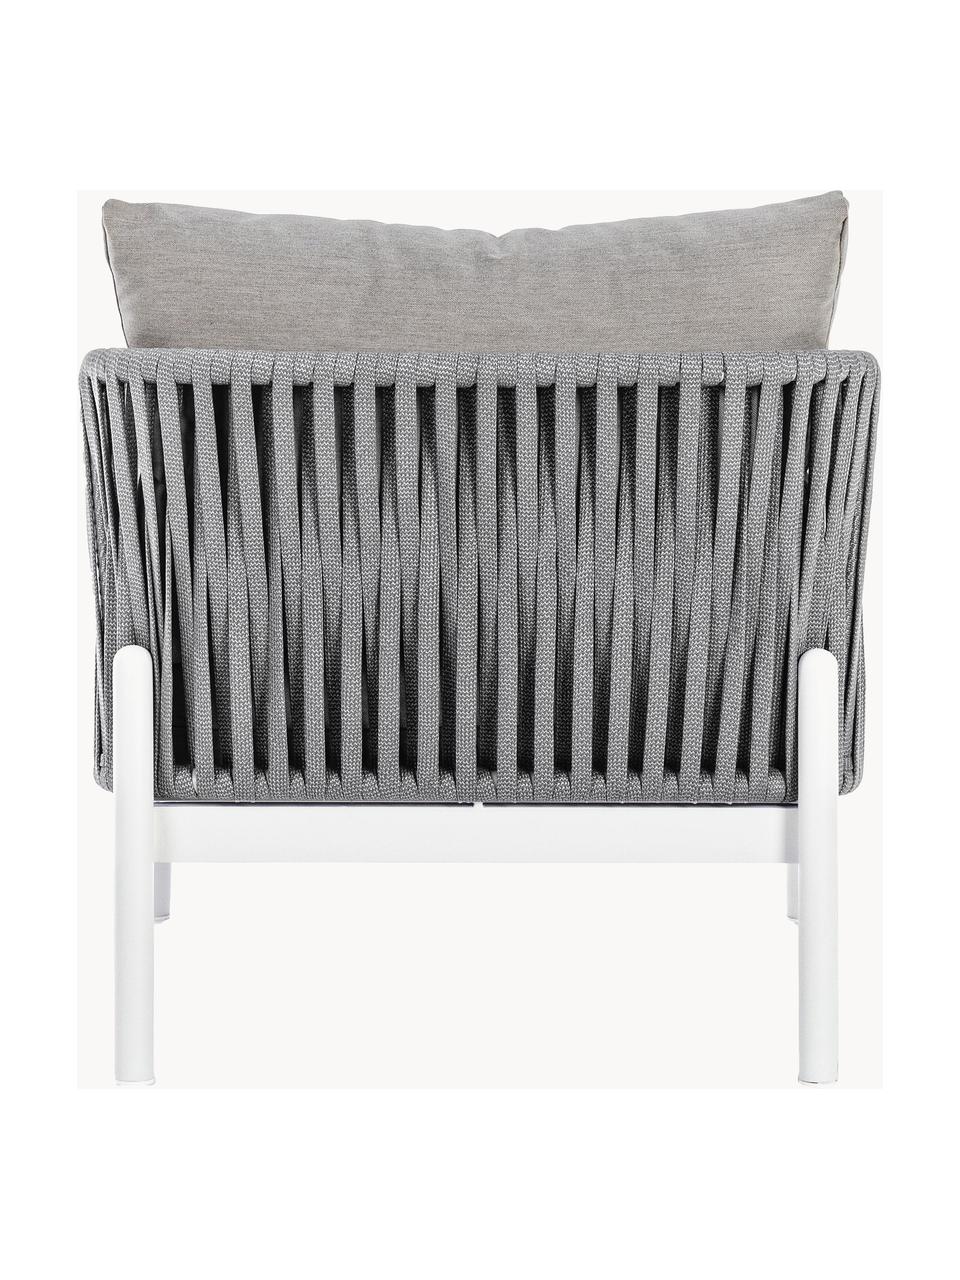 Garten-Loungesessel Florencia, Gestell: Aluminium, pulverbeschich, Sitzfläche: Polyester, Webstoff Grau, Weiss, B 80 x T 85 cm